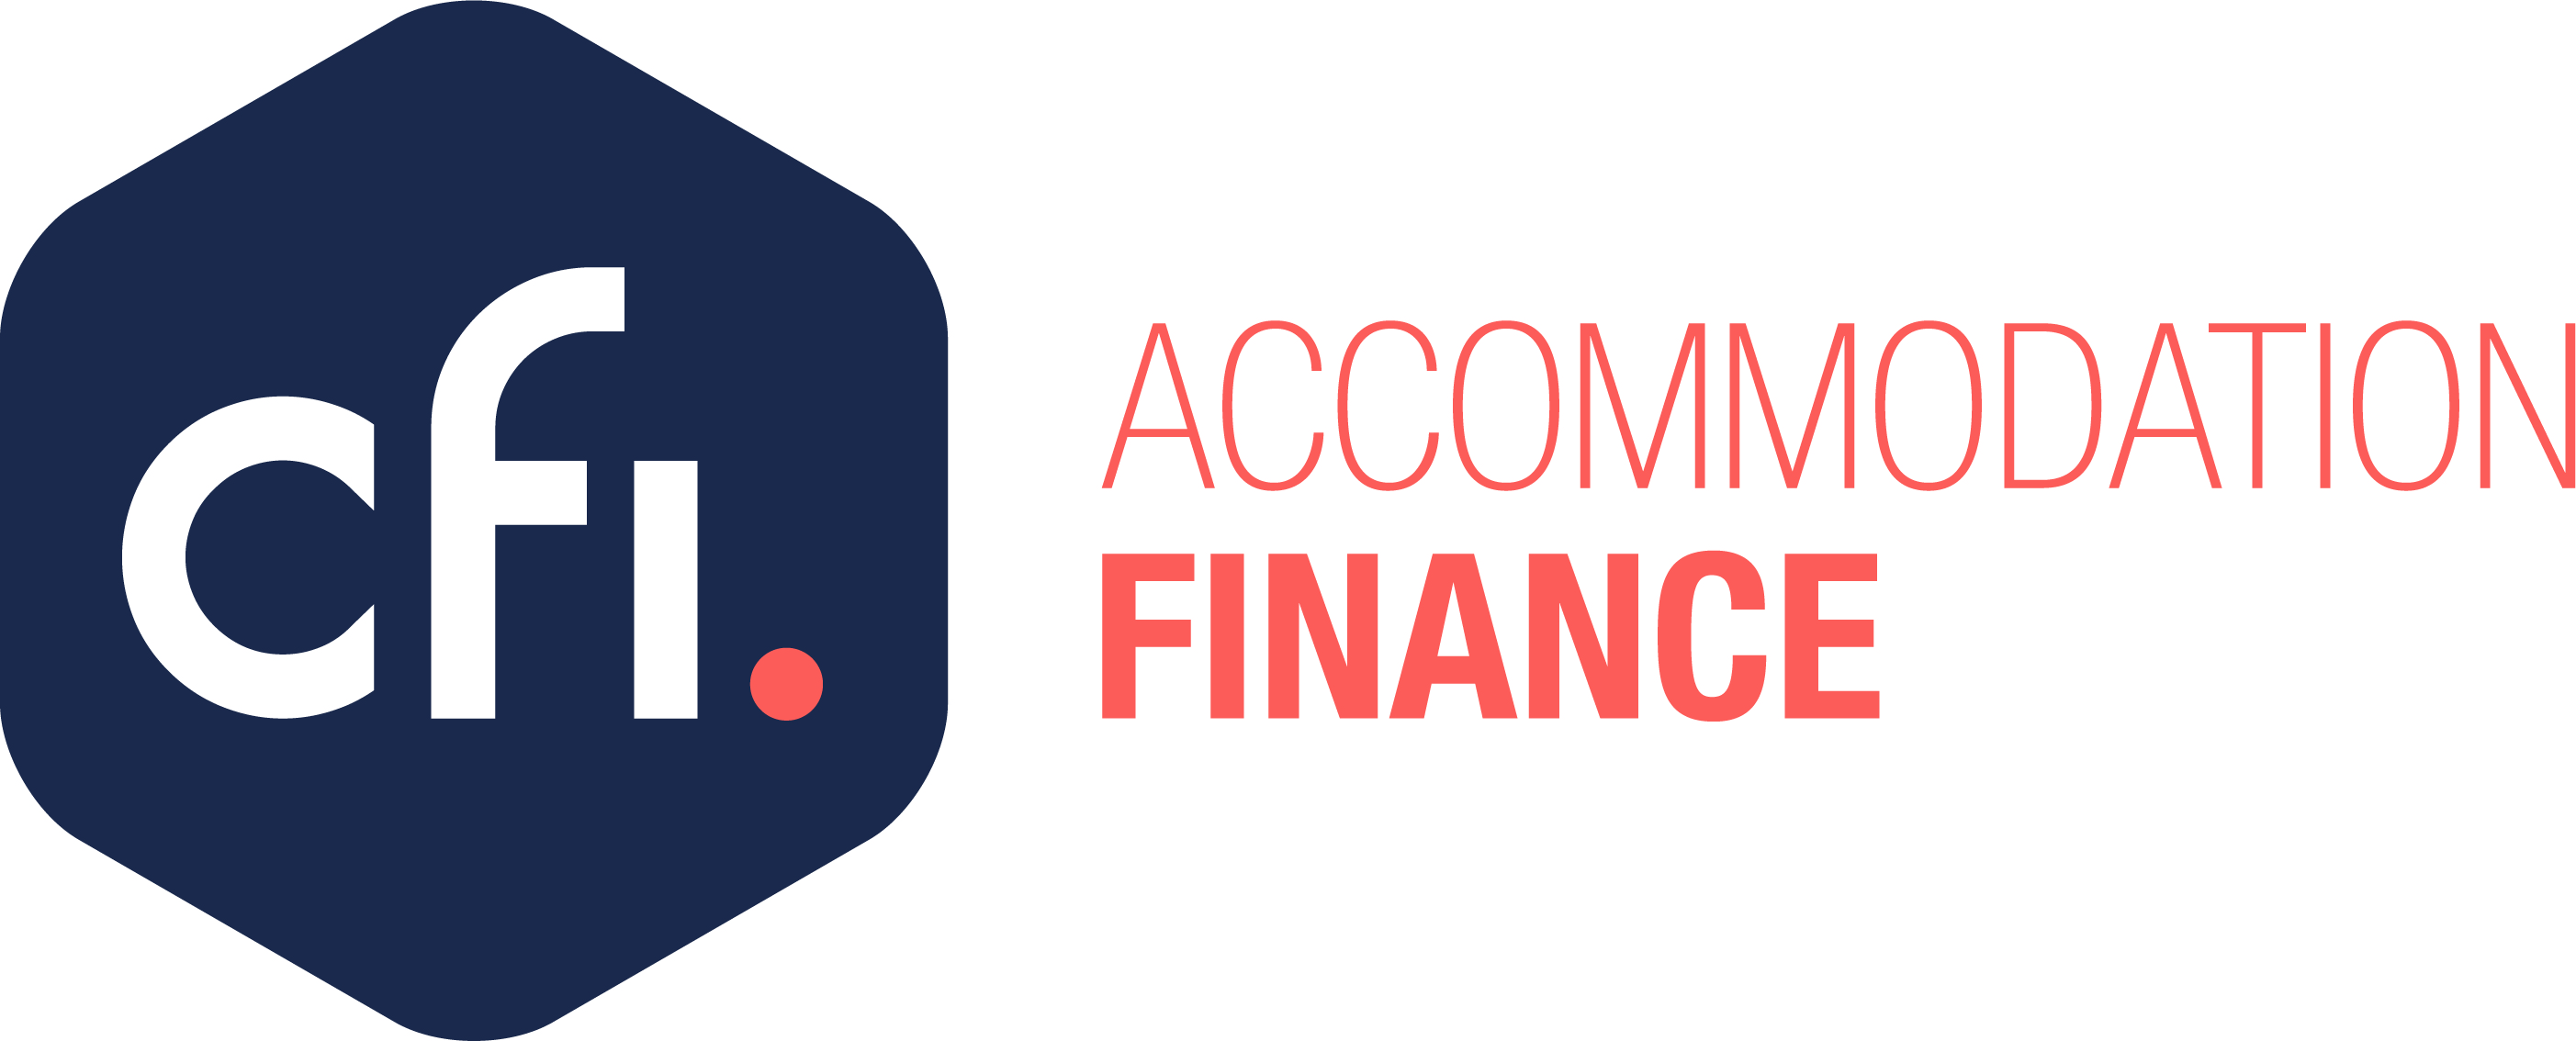 CFI Accommodation Finance